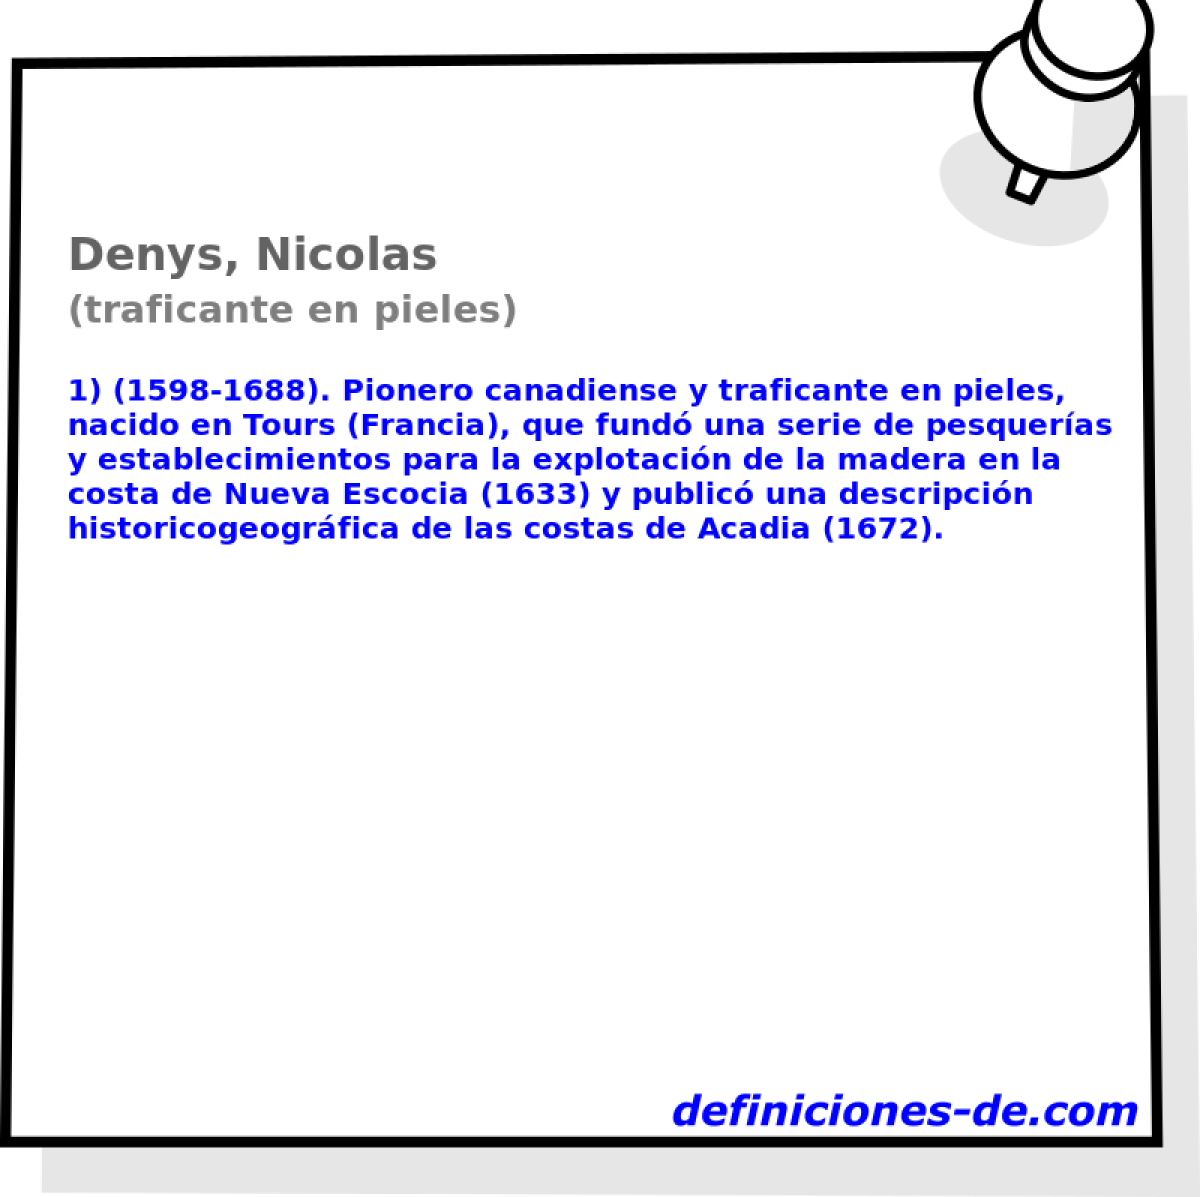 Denys, Nicolas (traficante en pieles)